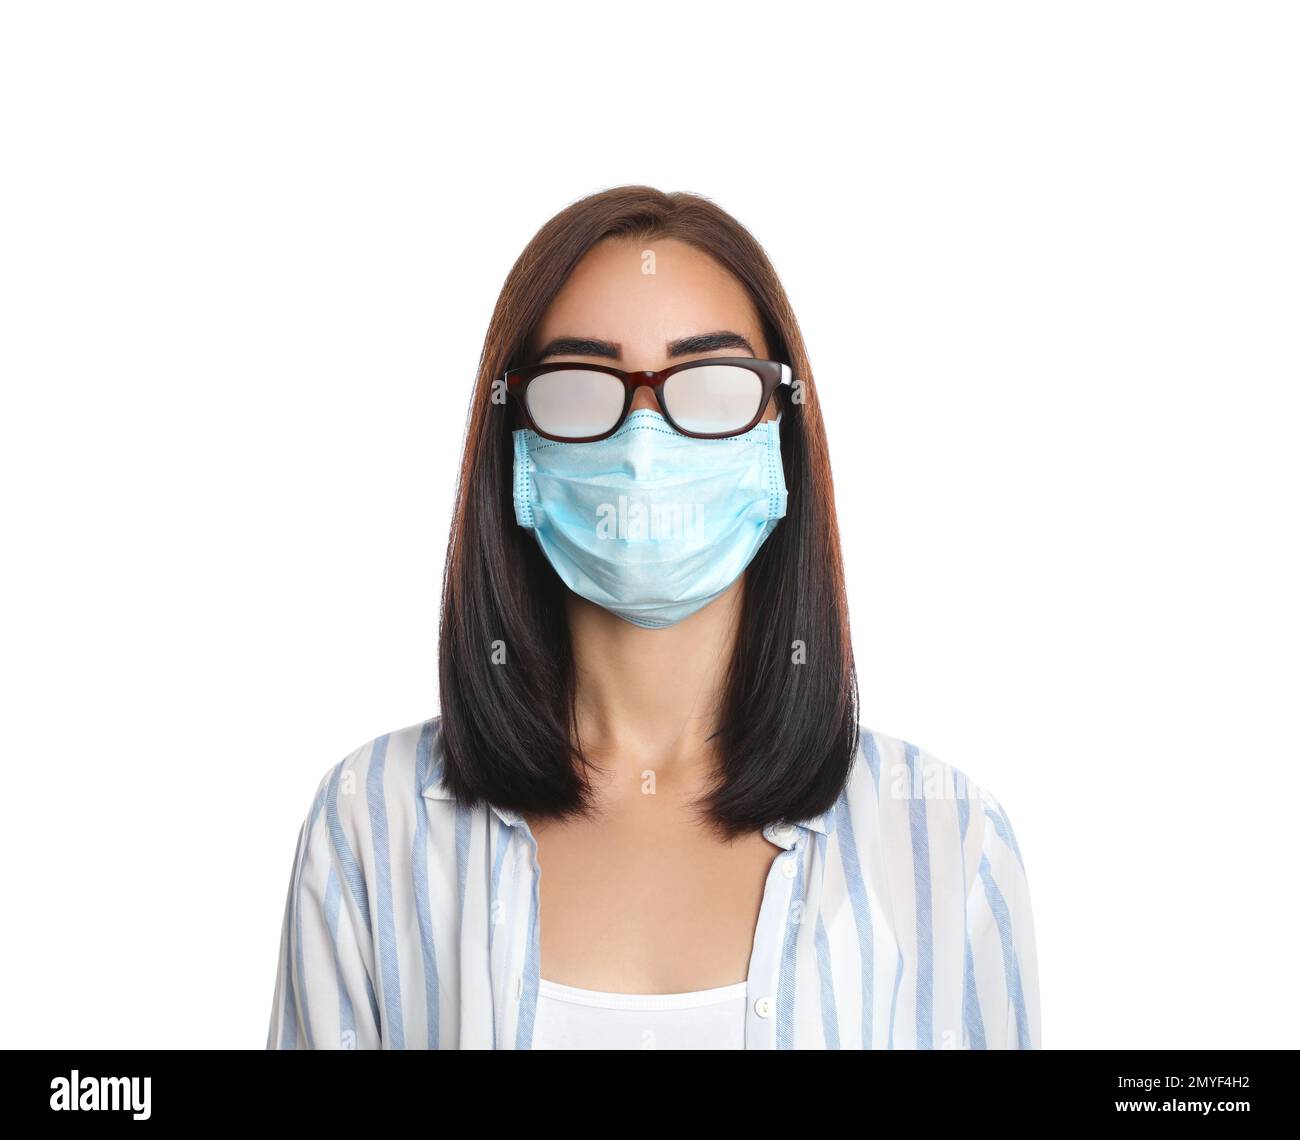 Gafas de niebla que se usan en la mujer joven. Niña adolescente en azul  protector médico máscara facial y gafas toallitas gafas borrosas niebla  maltratadas gafas. Nueva normalidad Fotografía de stock 